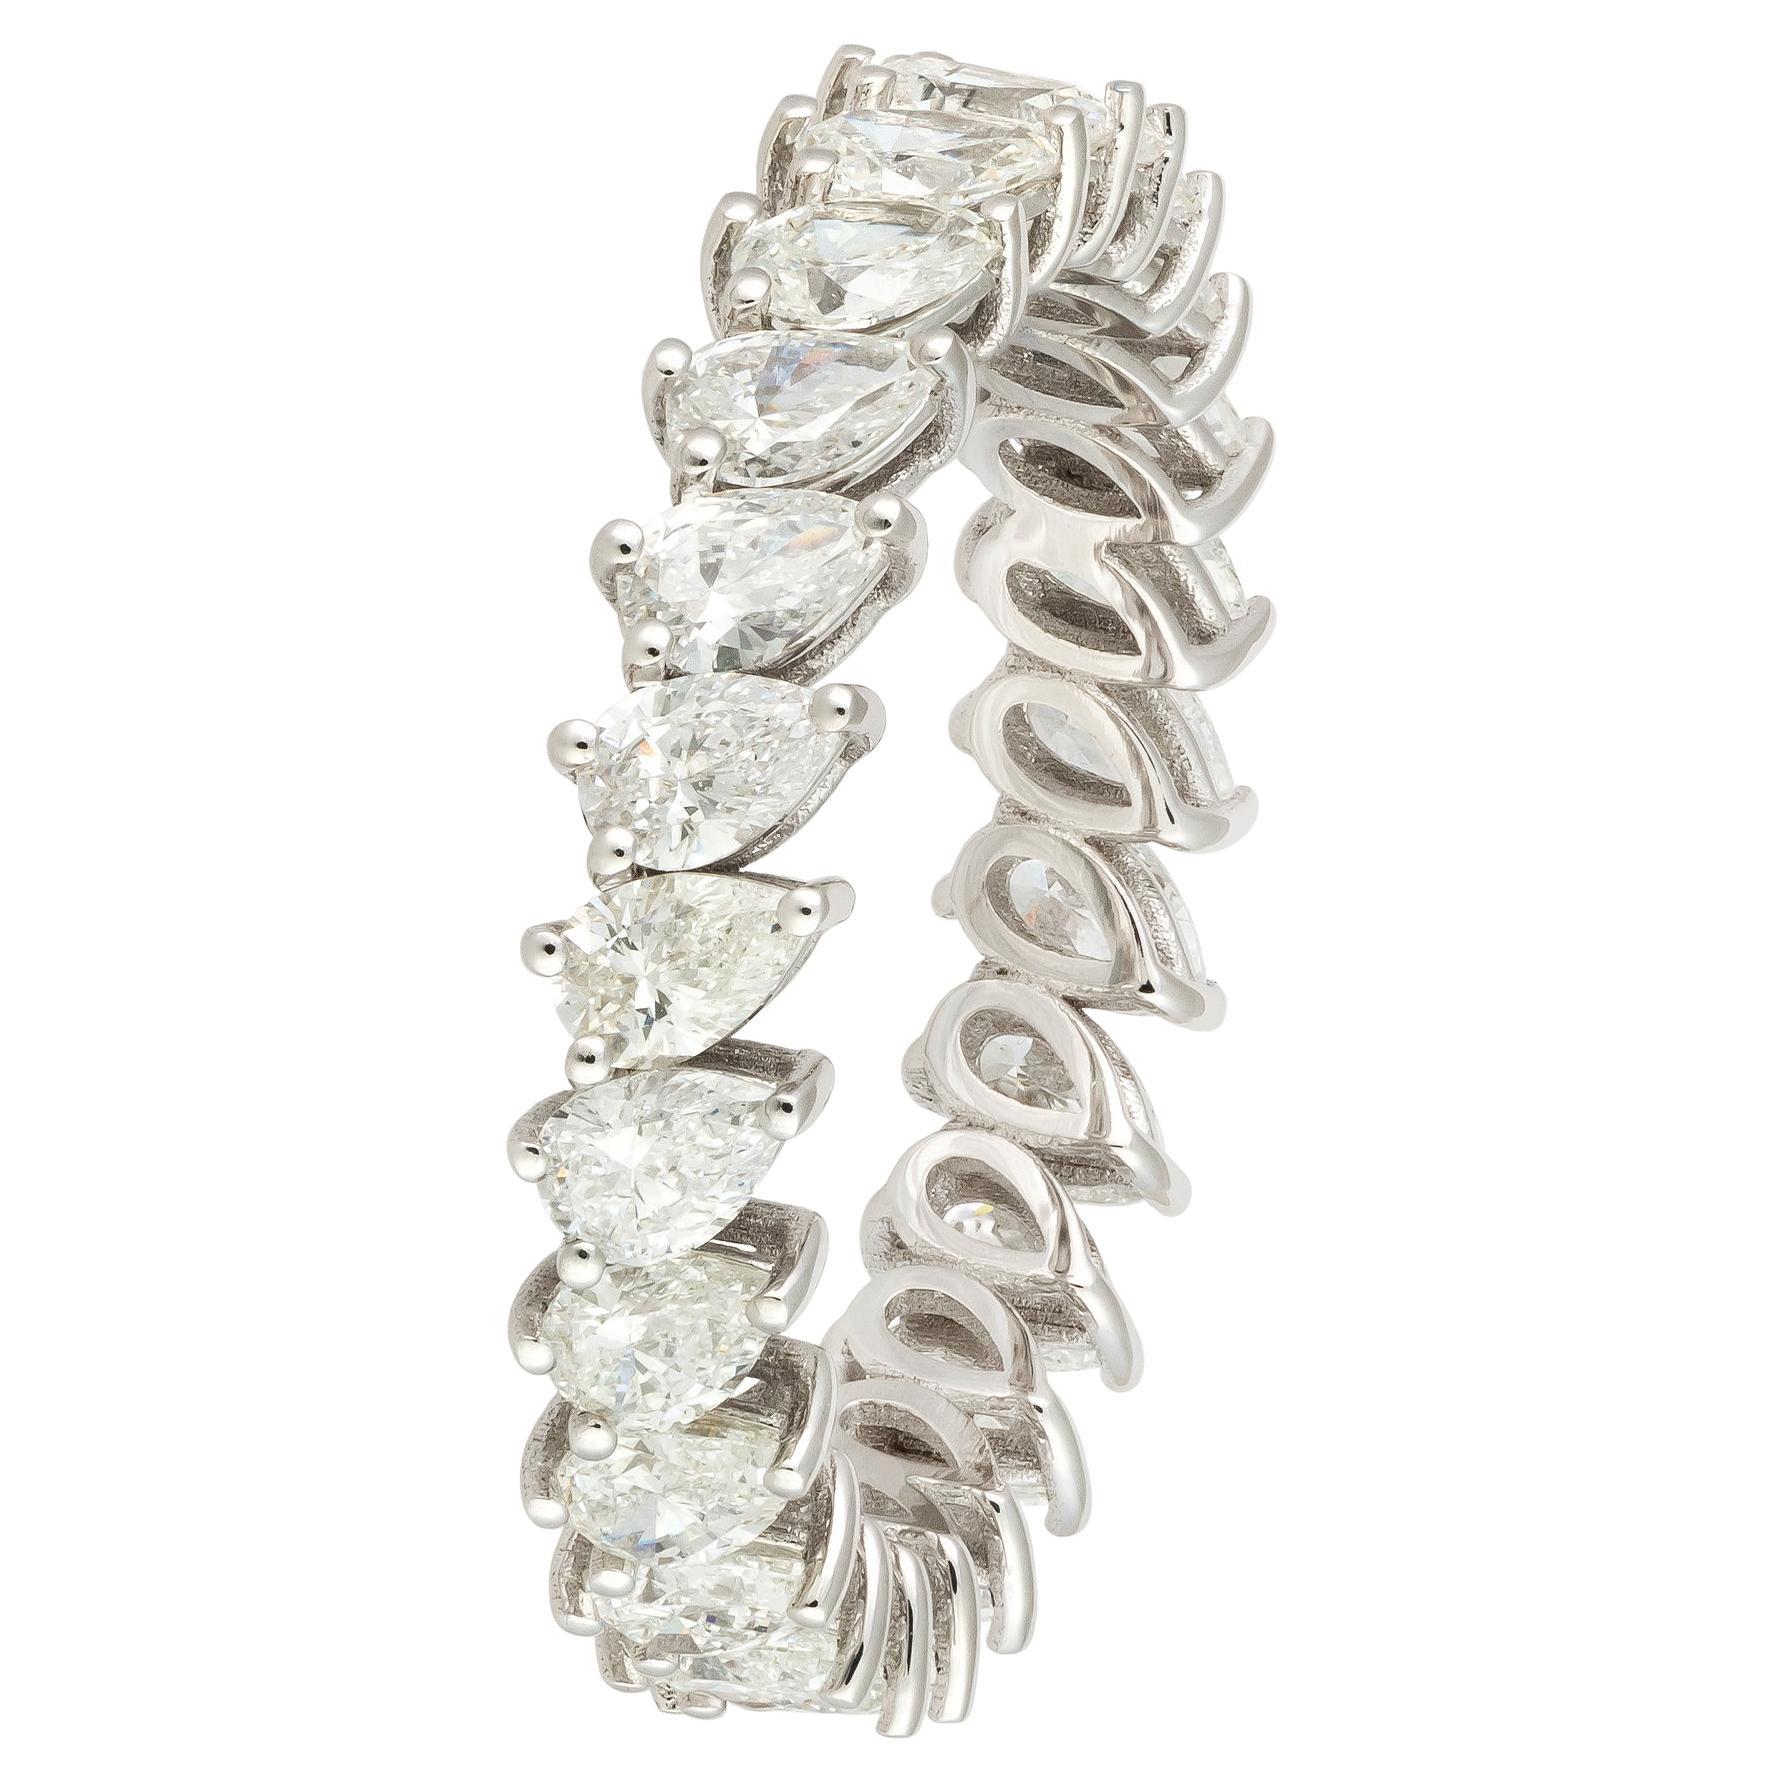 For Sale:  Impressive White 18K Gold White Diamond Ring for Her